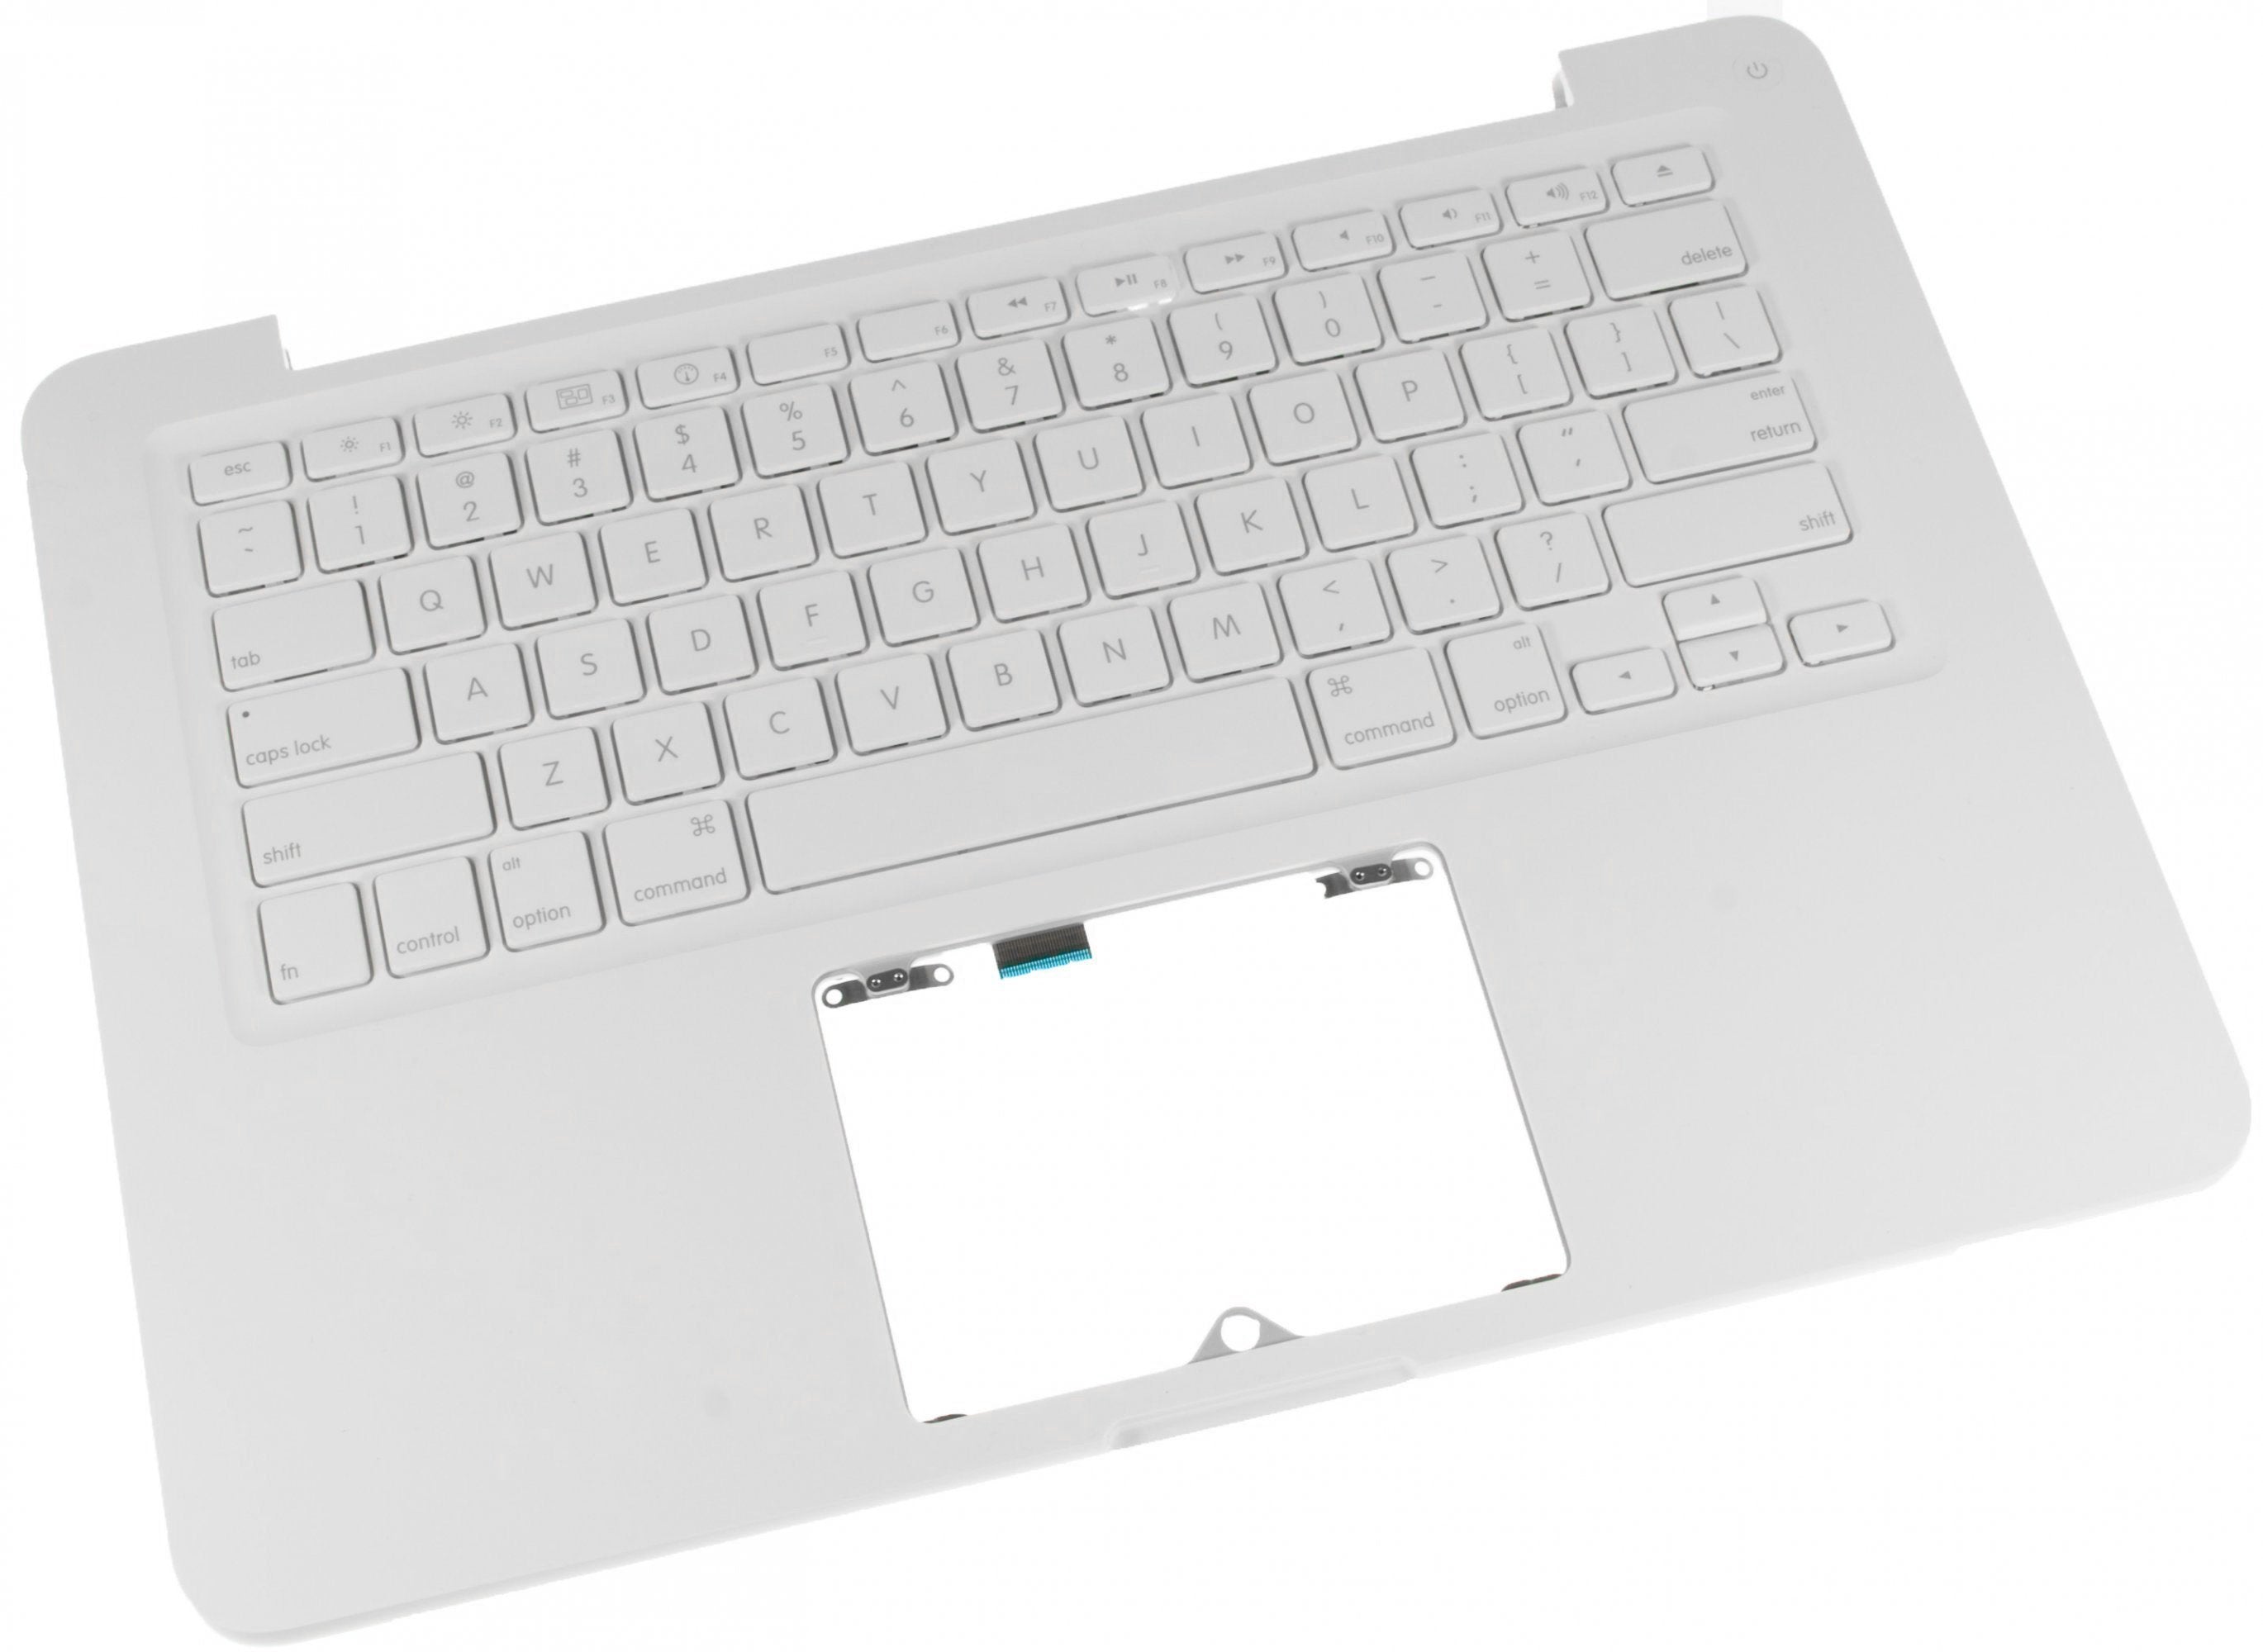 MacBook Unibody (A1342) Upper Case